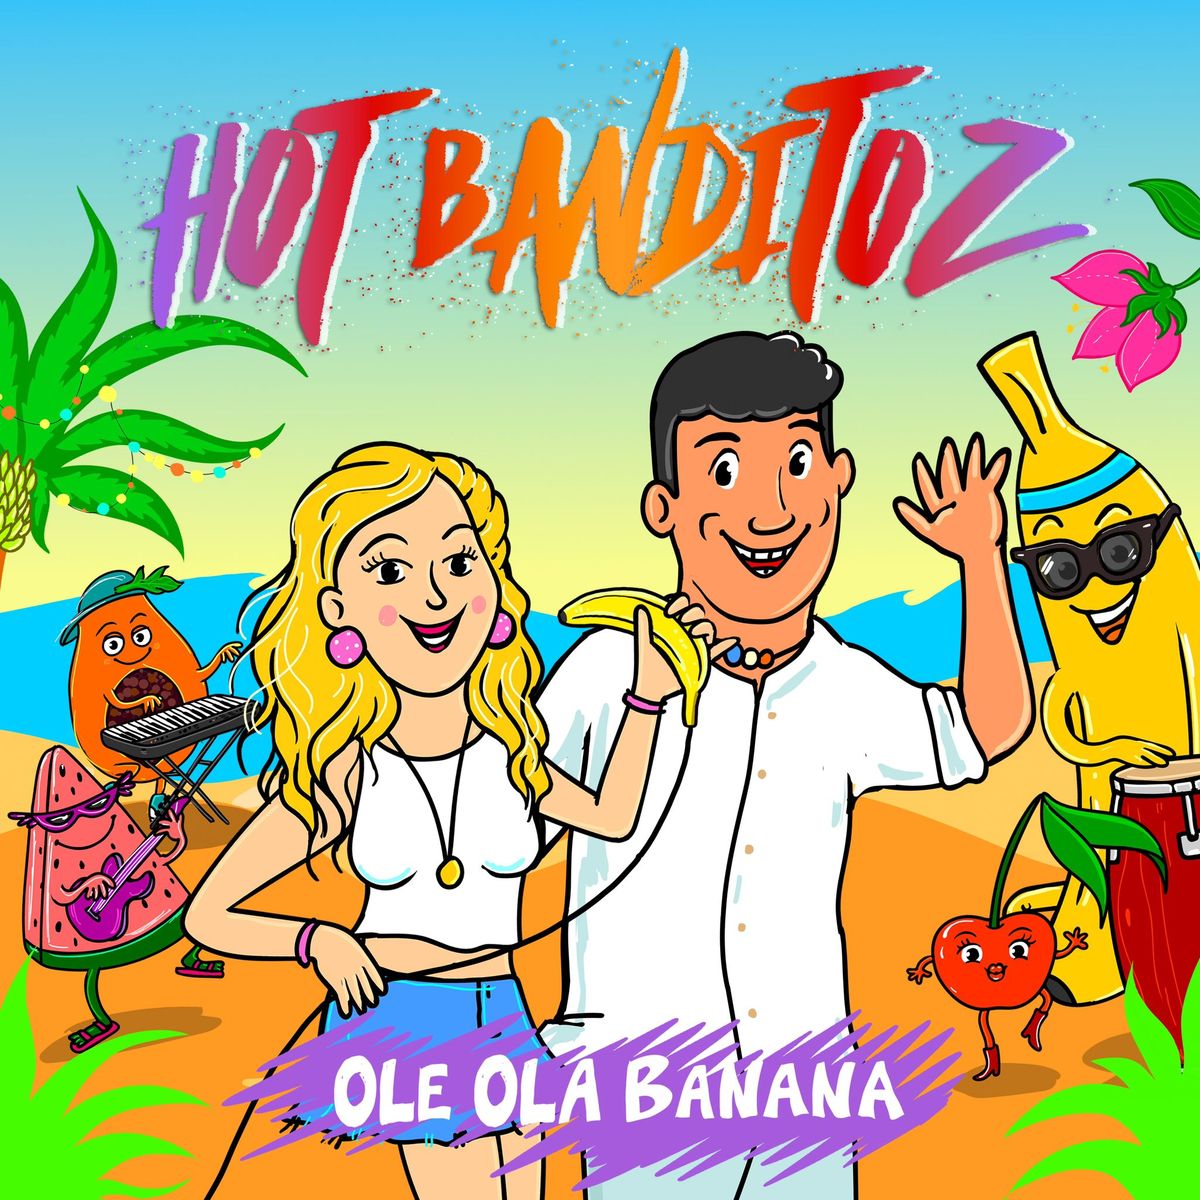 Foto: Hot Banditoz - Ole Ola Banana.